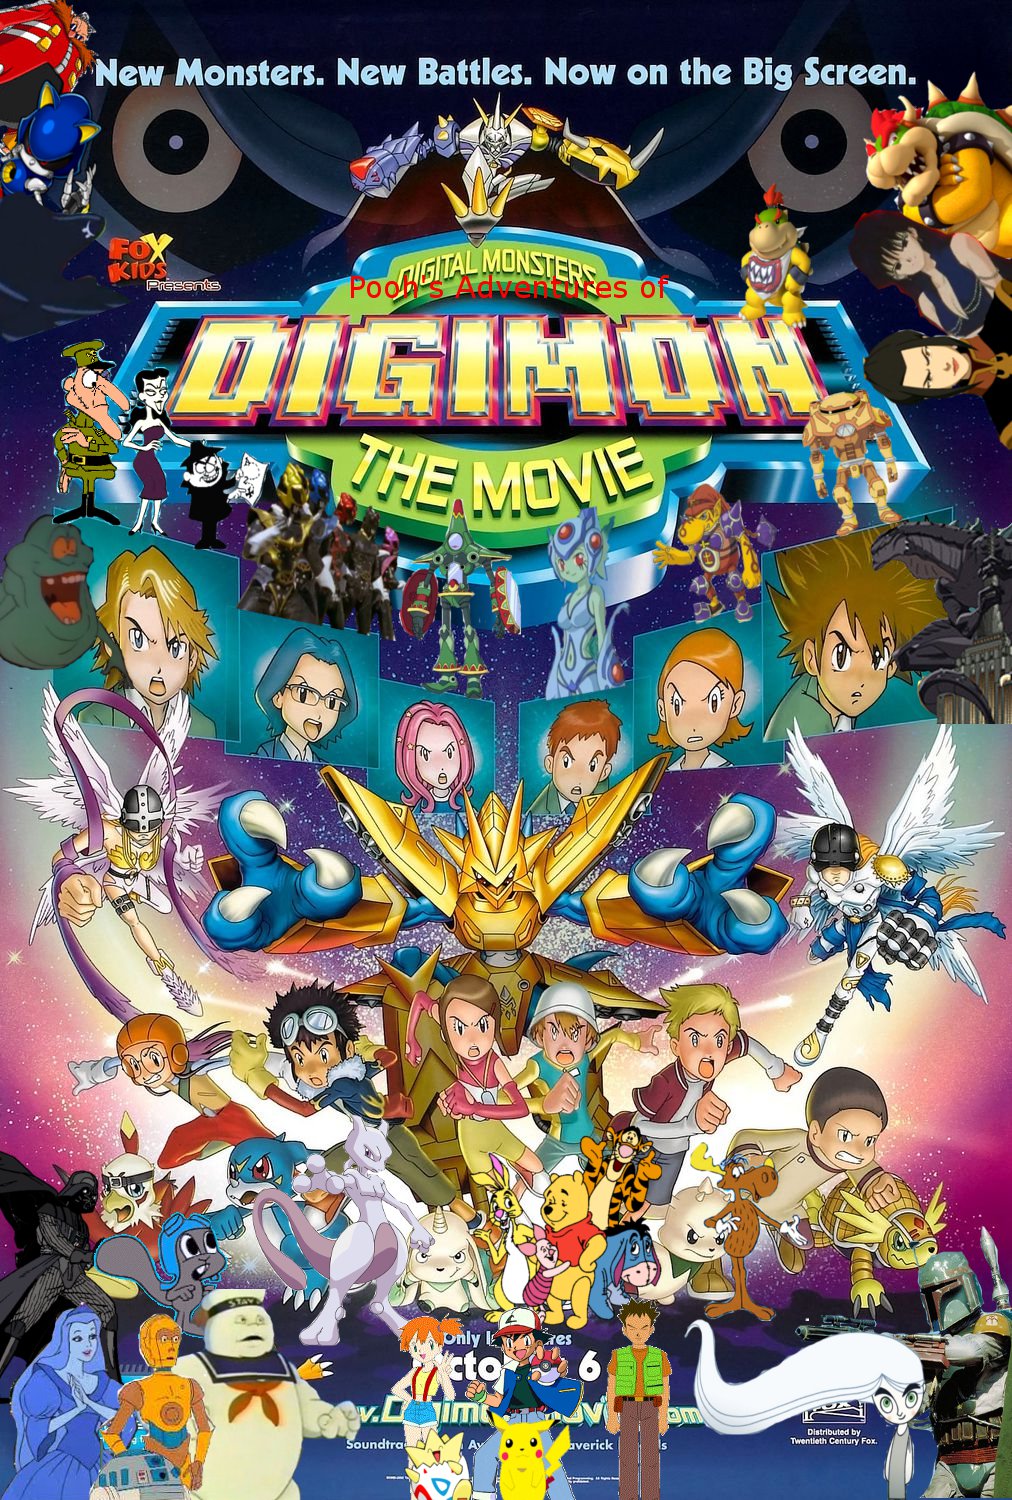 Digimon Adventure 02 Movie: The Golden Digimentals